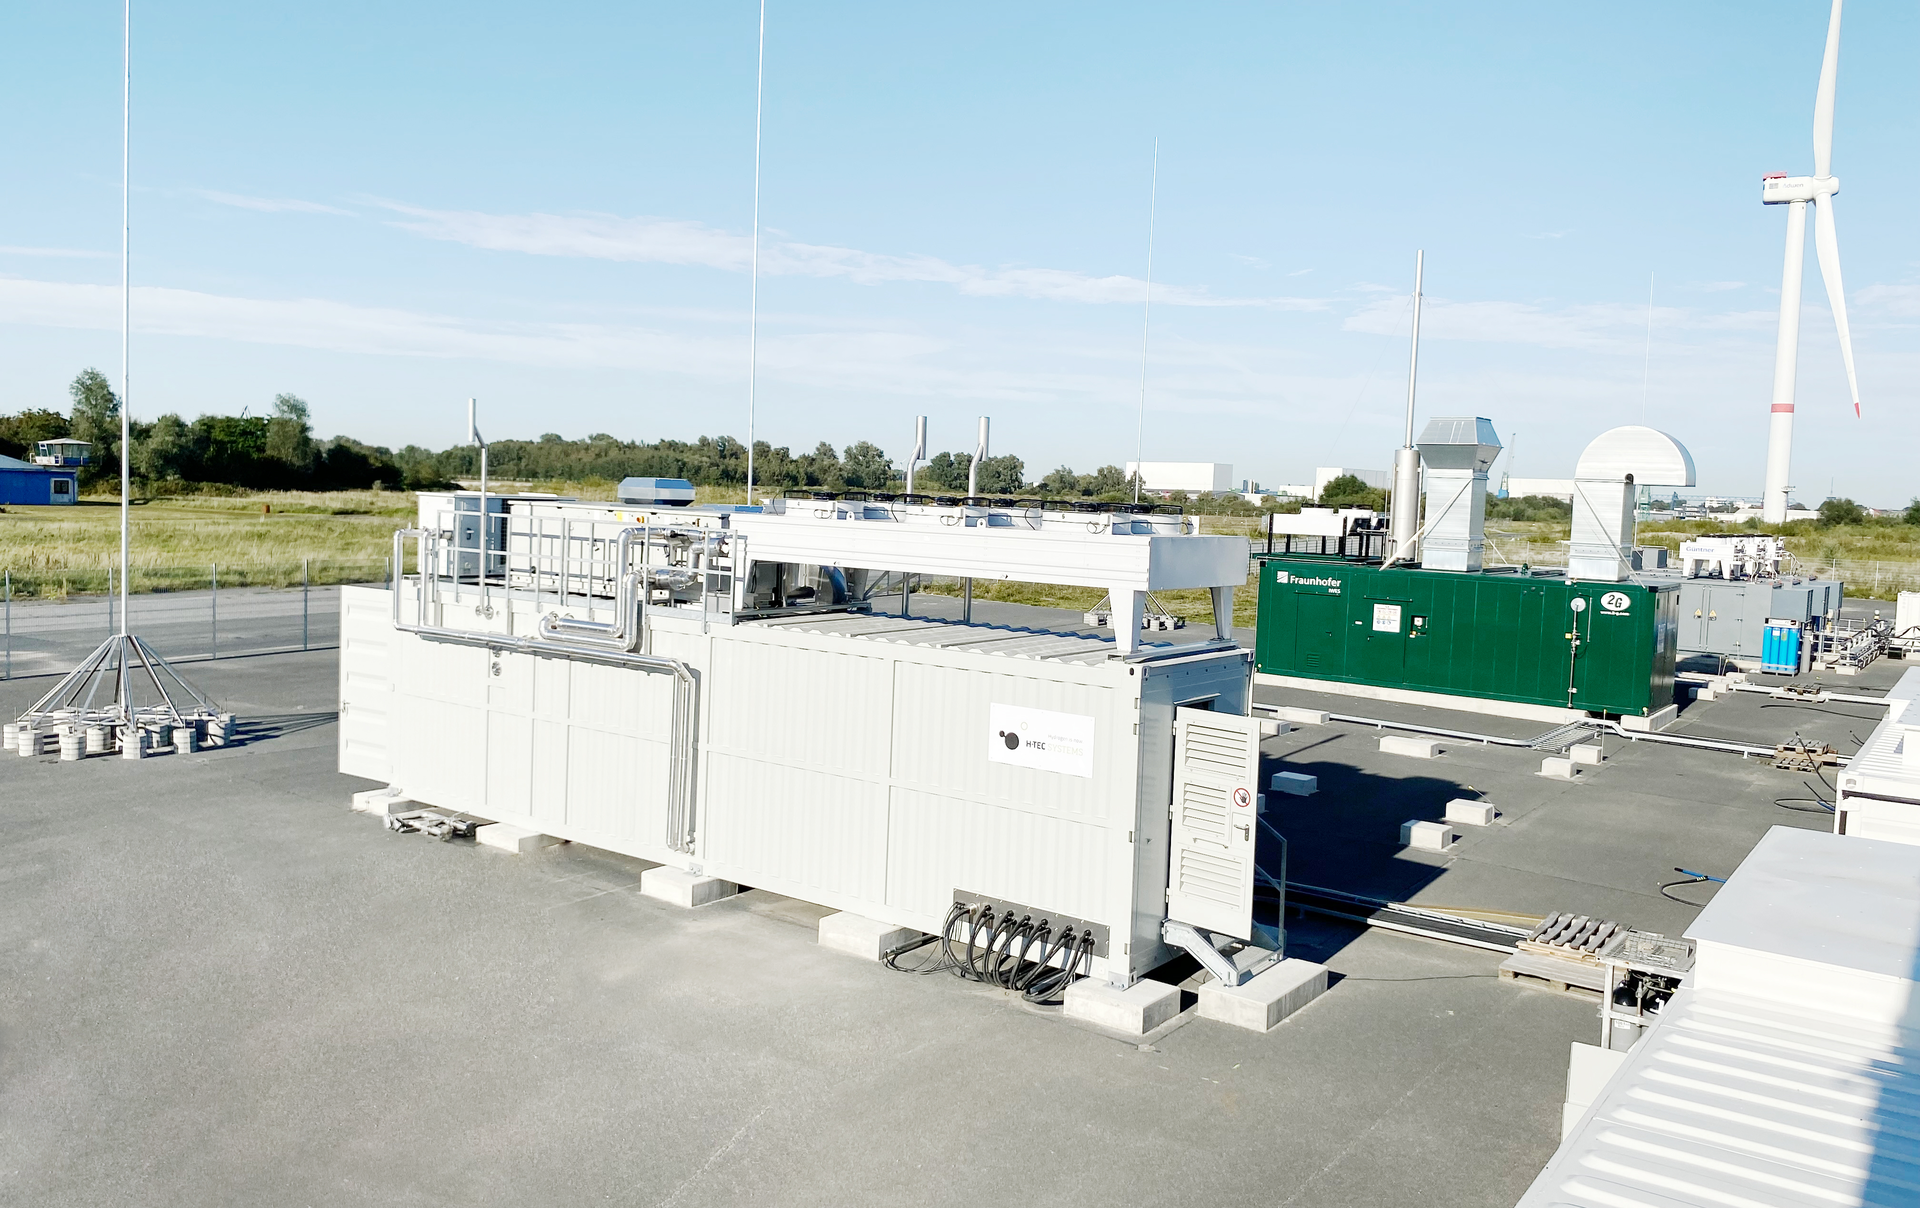 Hydrogen Lab Bremerhaven: H-TEC SYSTEMS Referenzen